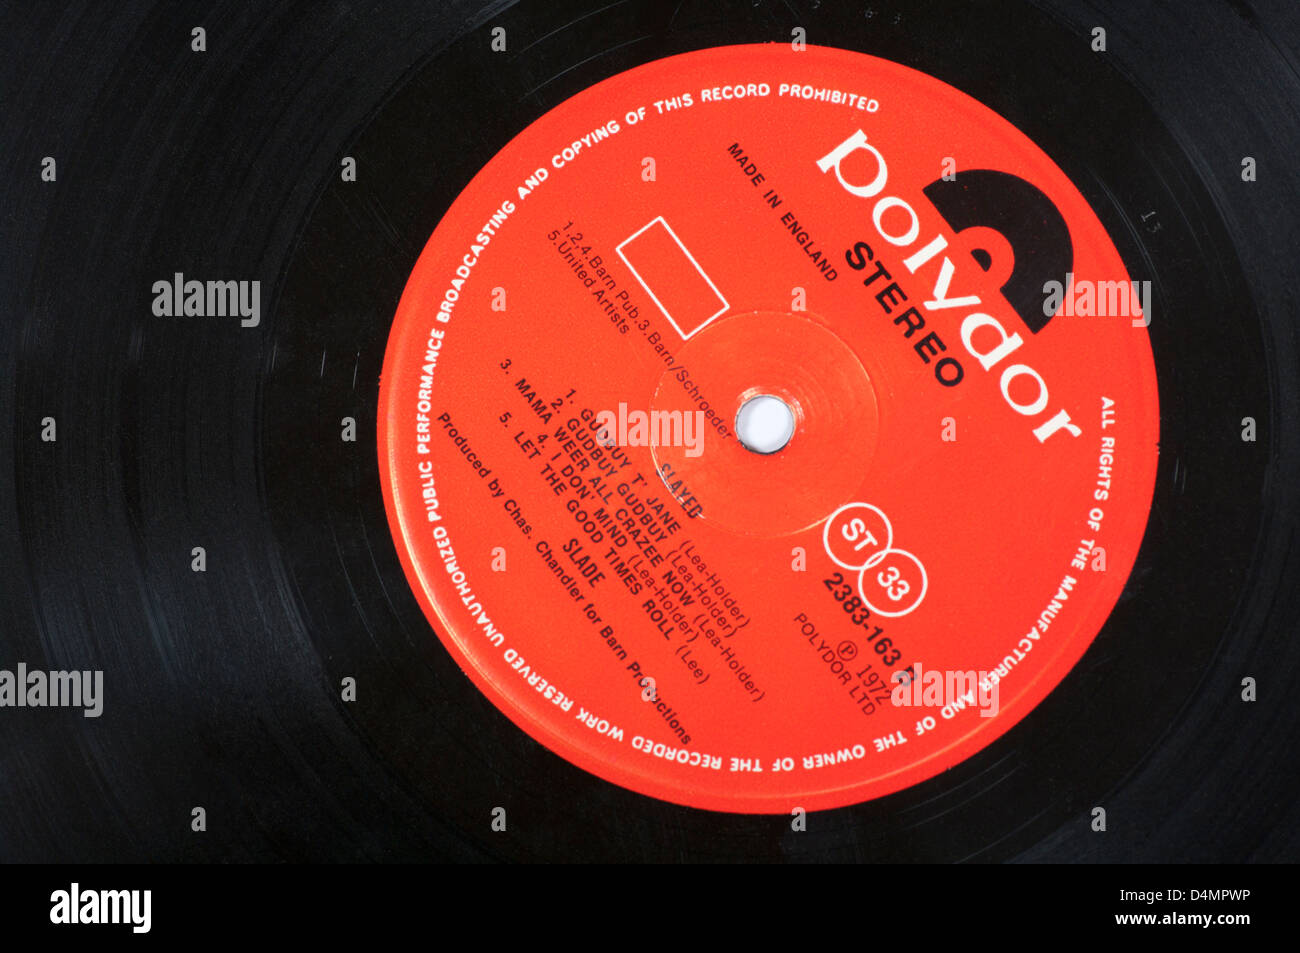 Critica Polydor etichetta discografica su vinile Registrazione LP Foto Stock